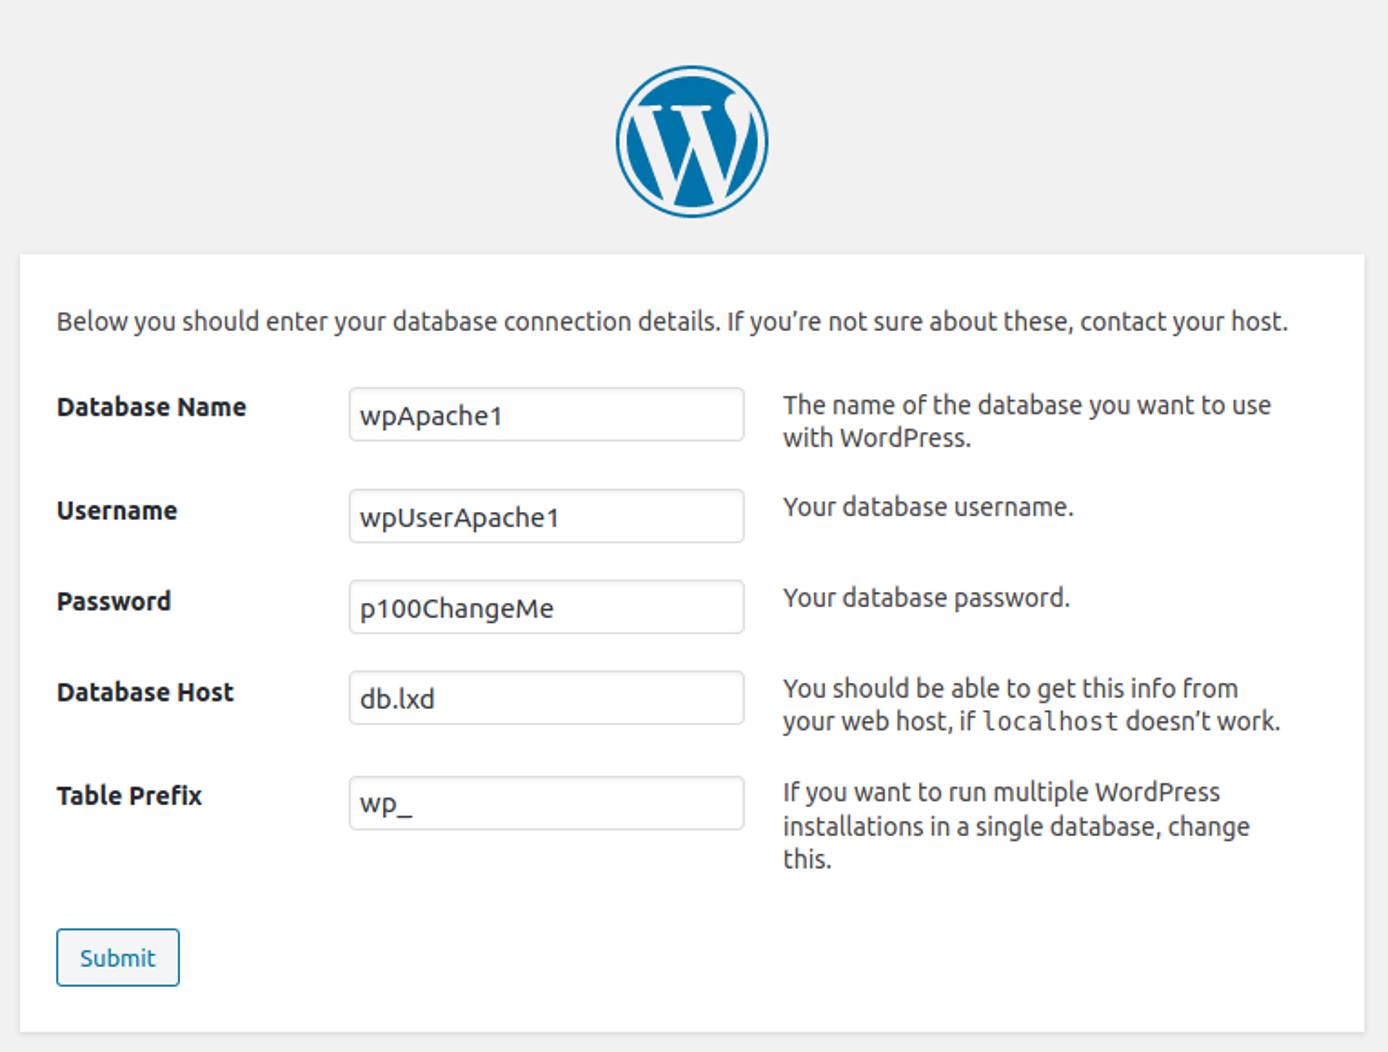 WordPress installation Wizard: Database connection details